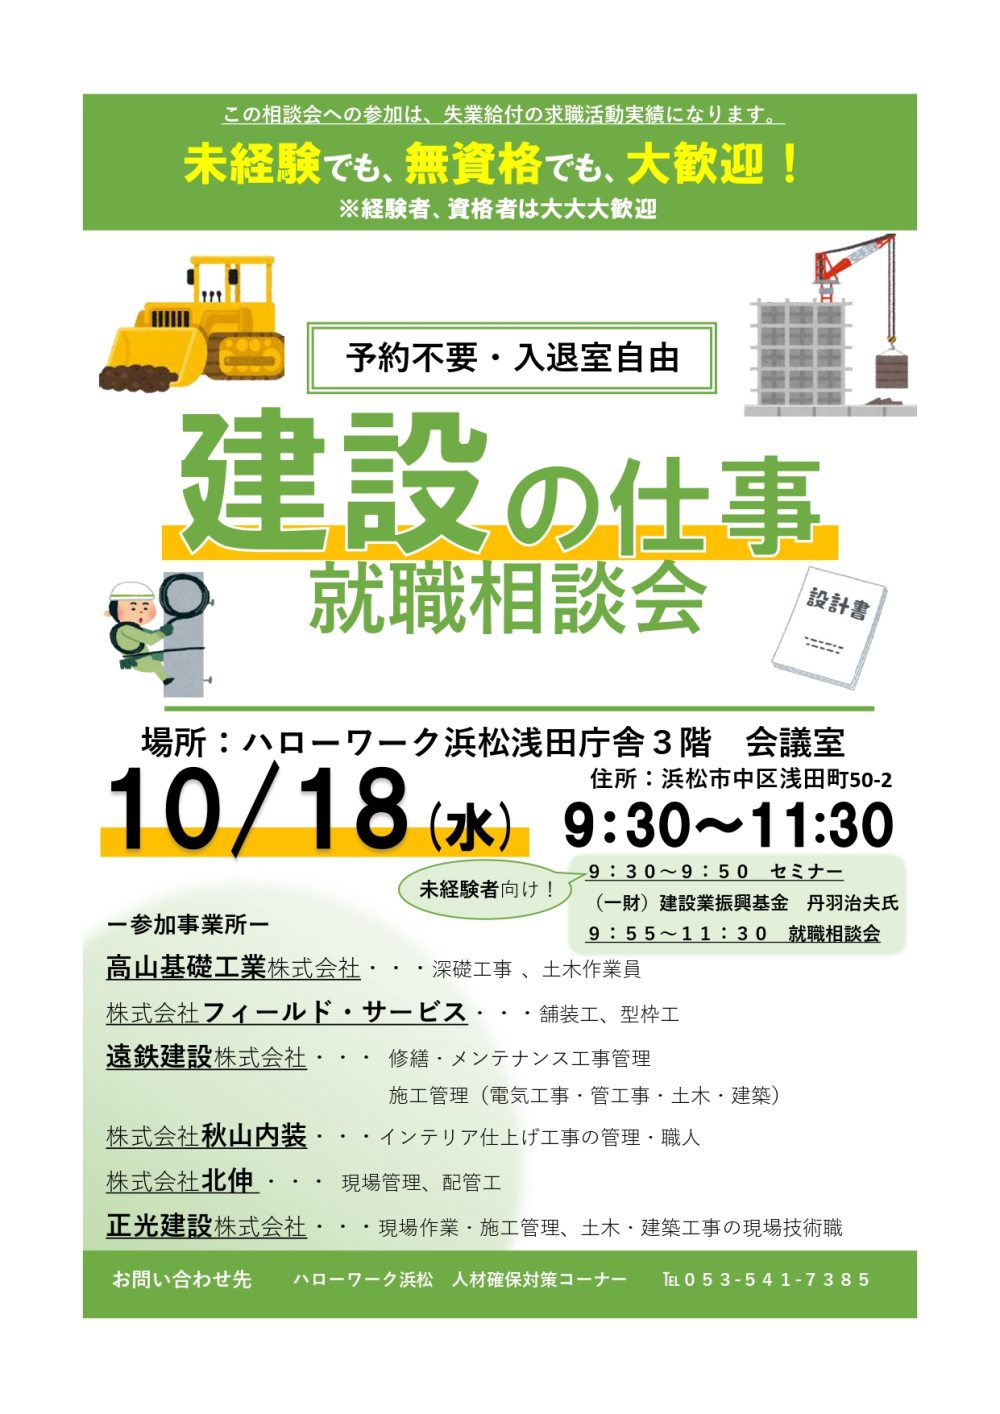 １０月１８日浜松市にて「建設の仕事」就職相談会に出展します